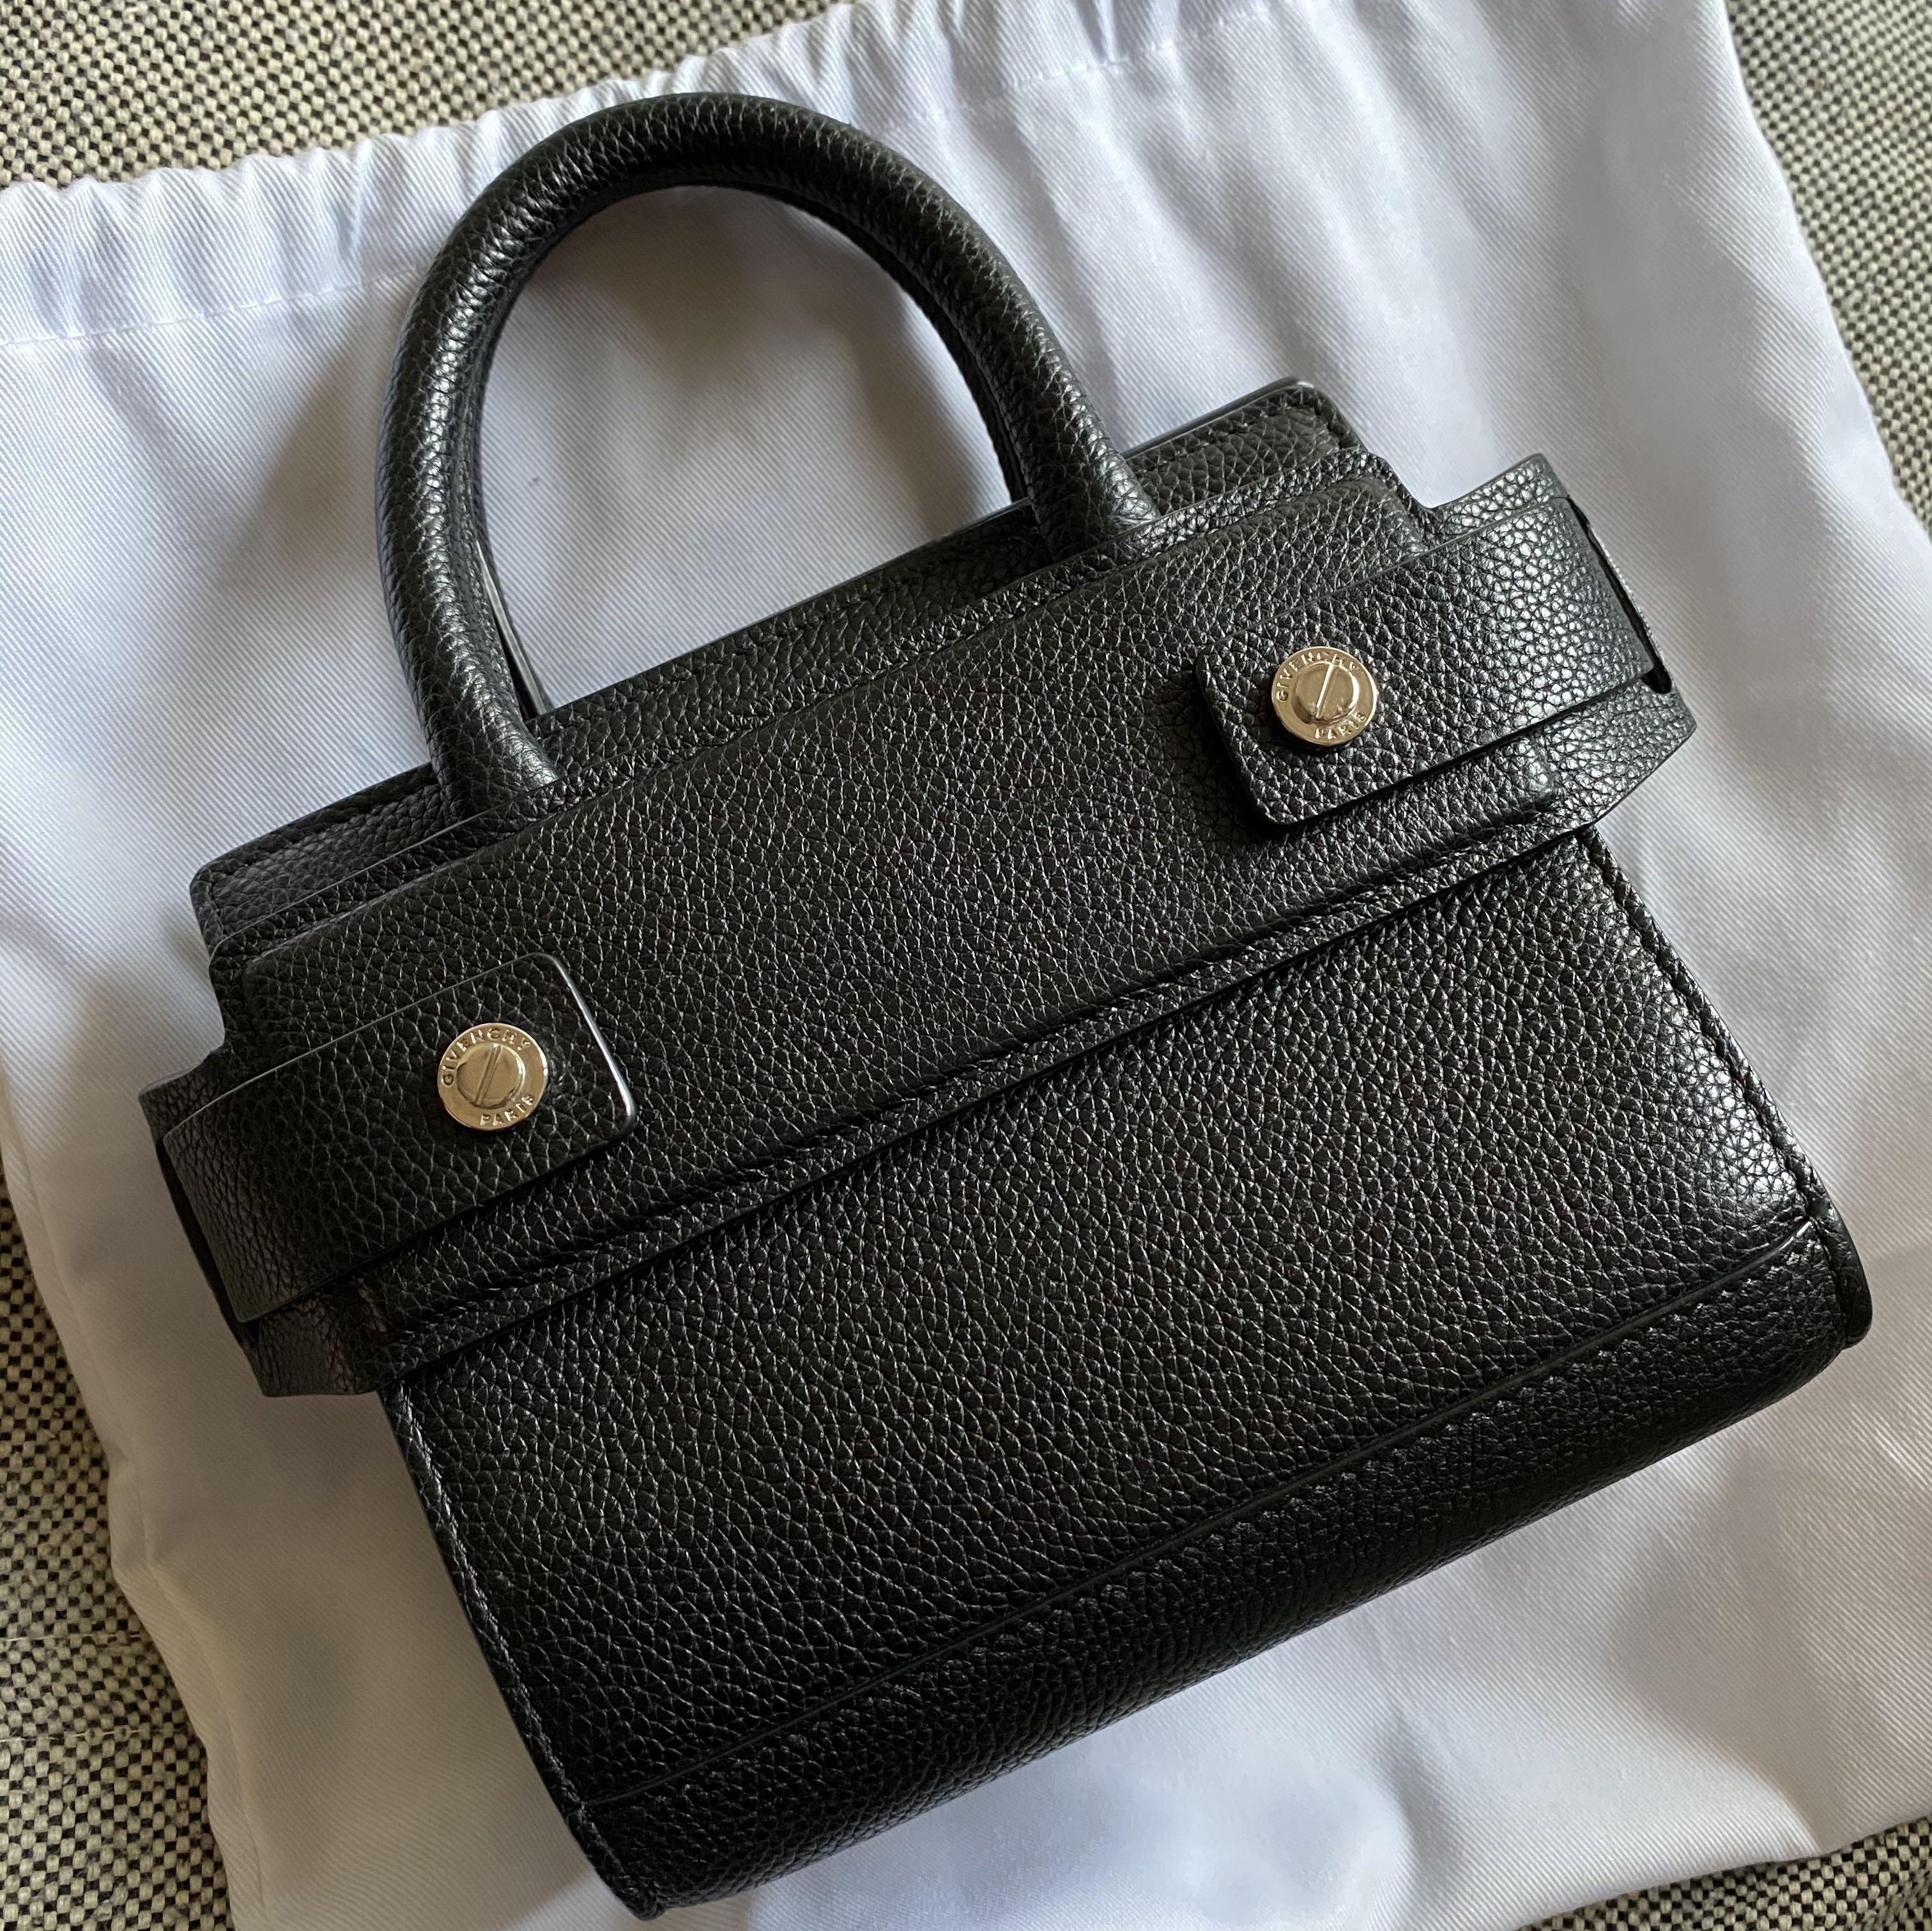 100%正品Givenchy 紀梵希horizon nano 側背手提包, 名牌精品, 精品包與